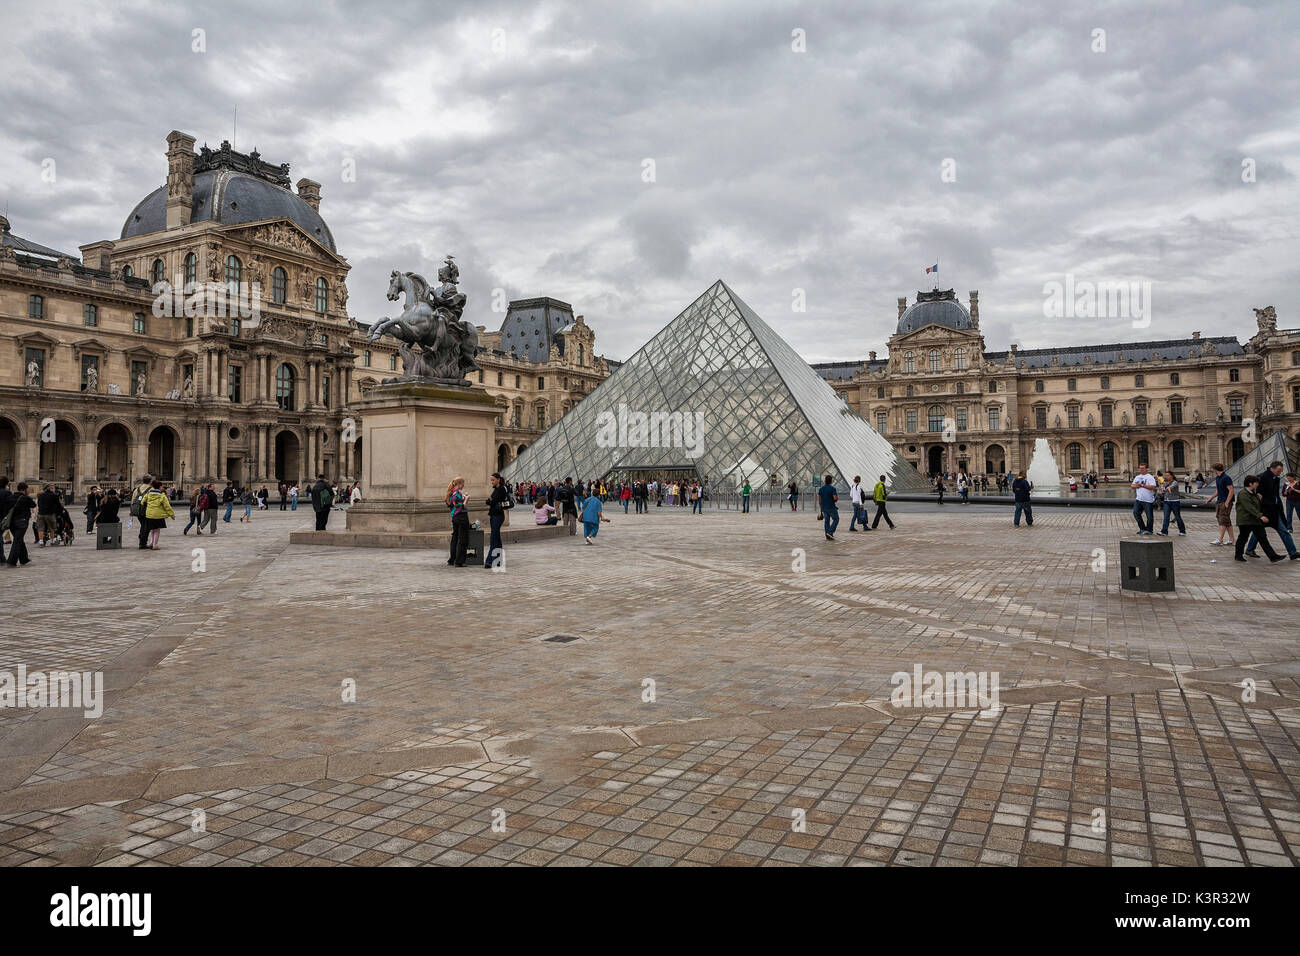 Le palais du Louvre et du Musée avec sa pyramide Paris France Europe Banque D'Images